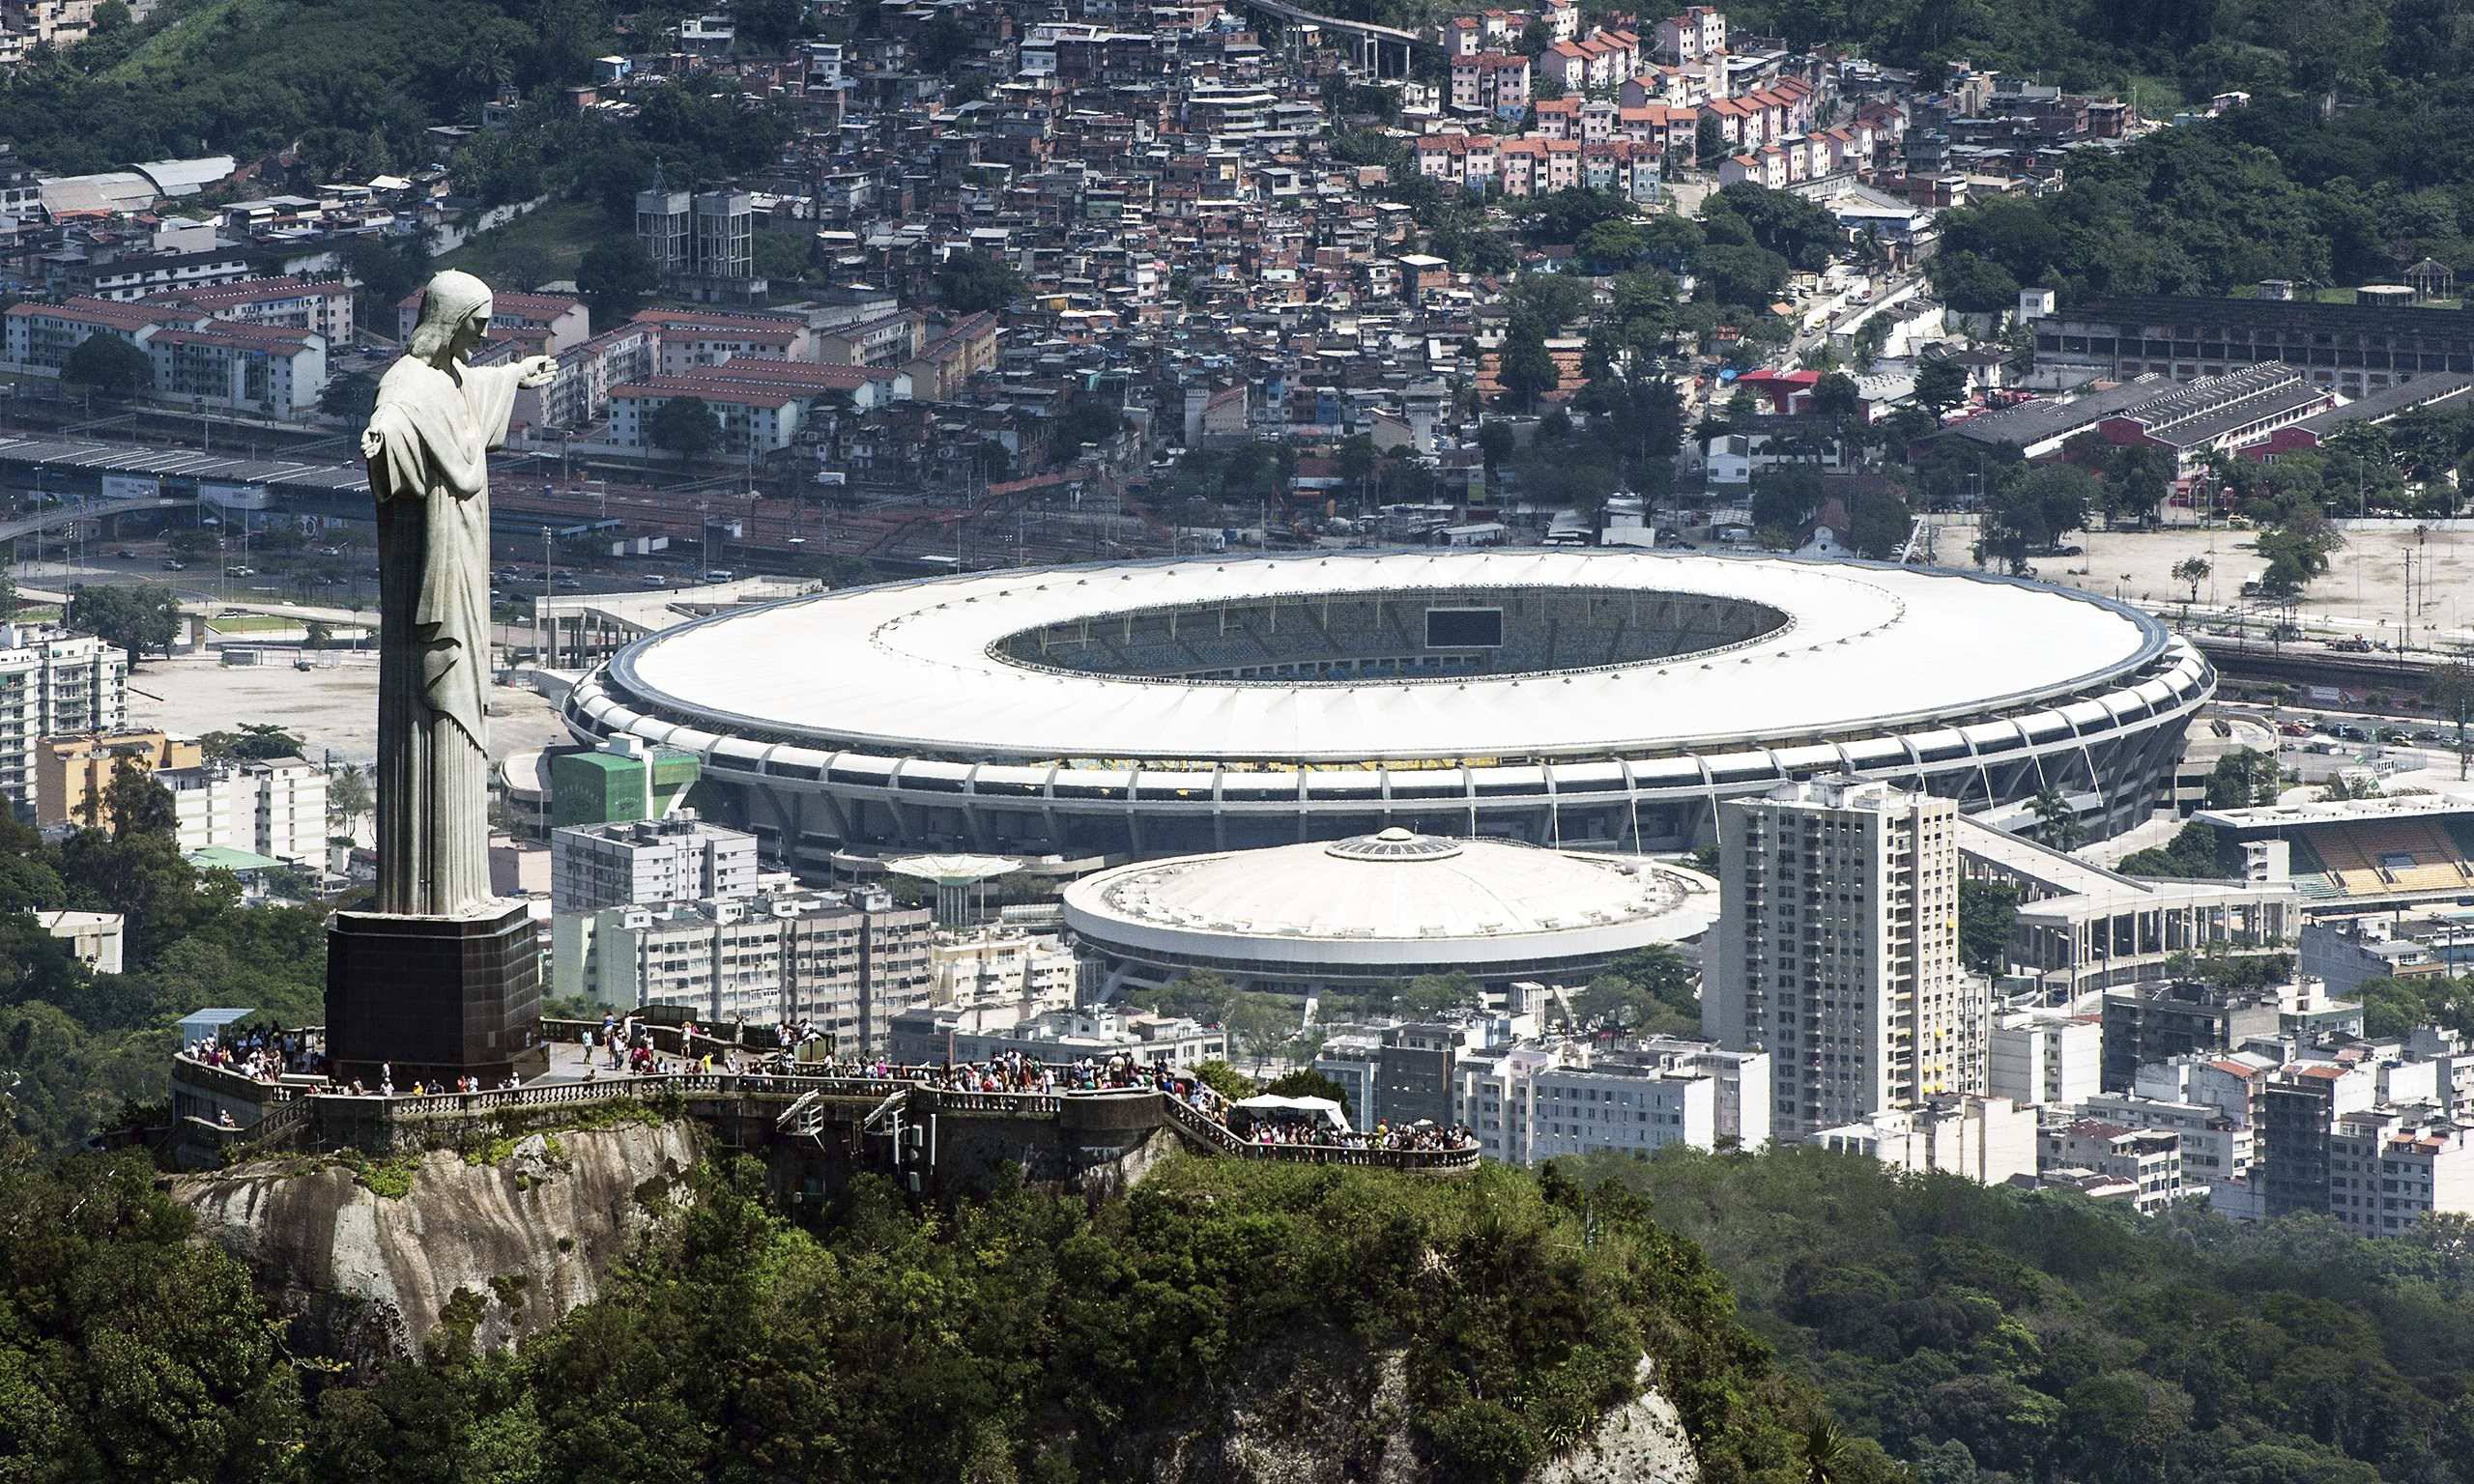 جام جهانی برزیل - المپیک ریو - برزیل - ریو دو ژانیرو 